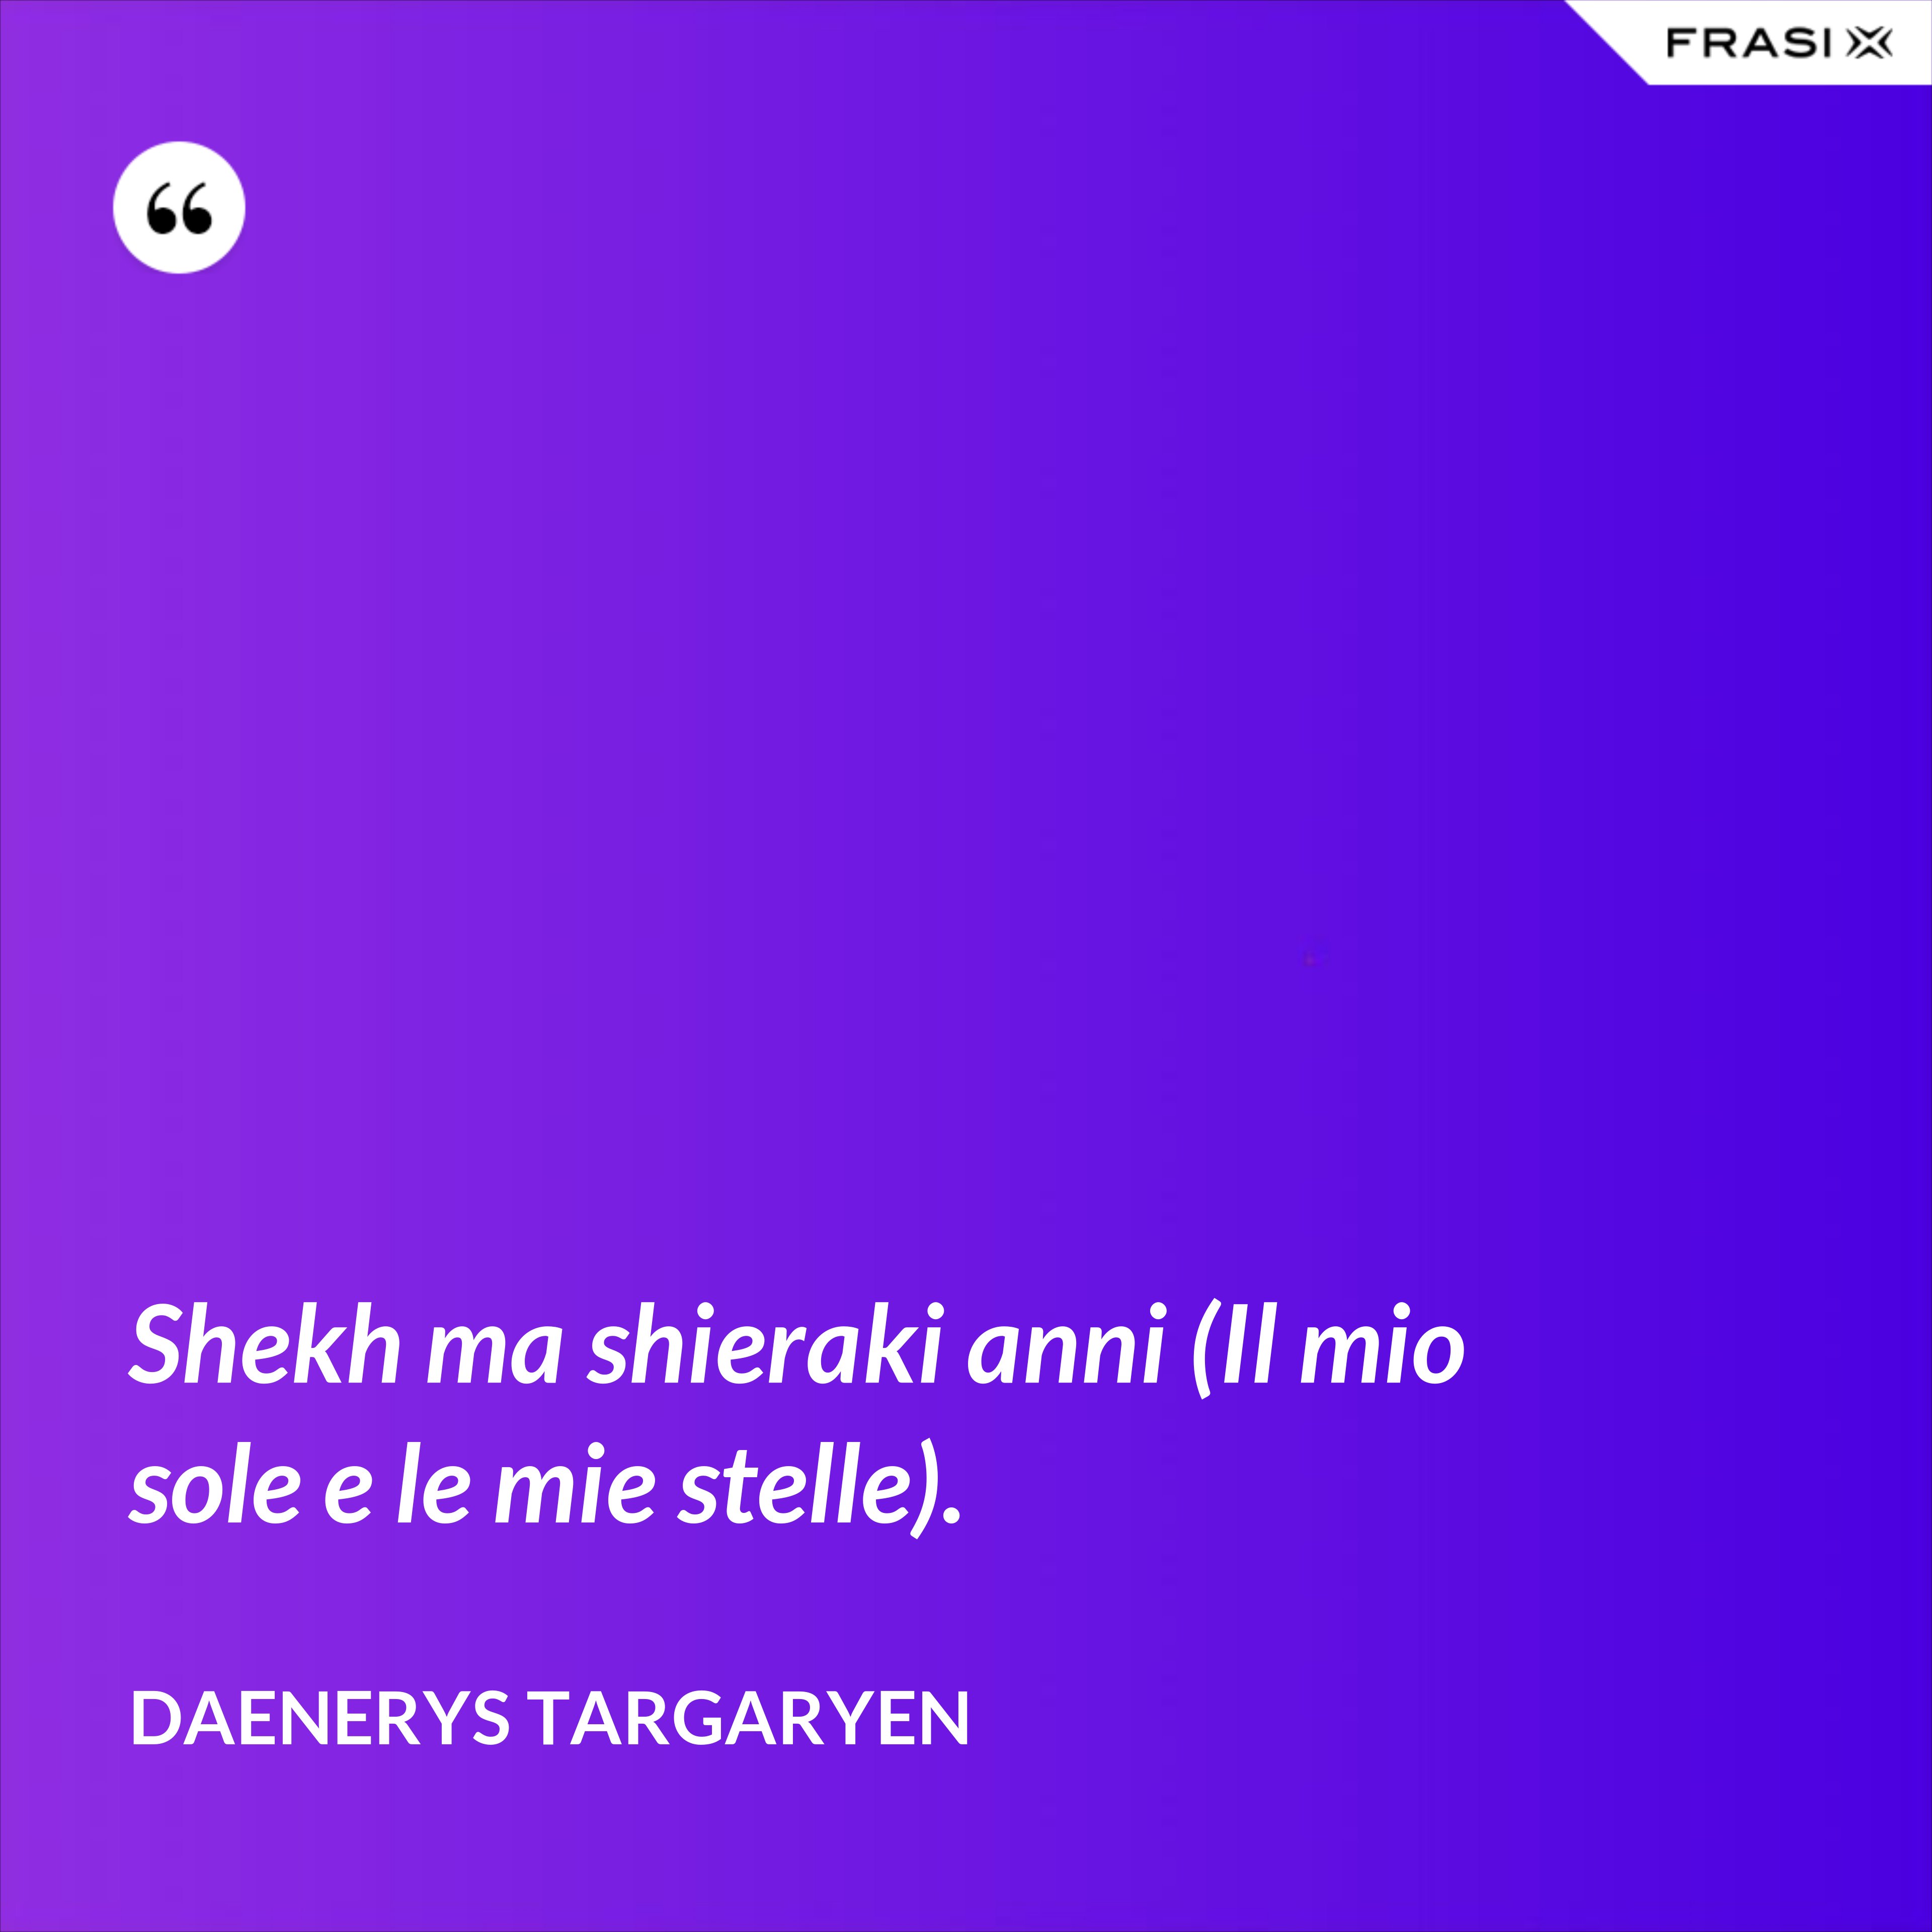 Shekh ma shieraki anni (Il mio sole e le mie stelle). - Daenerys Targaryen